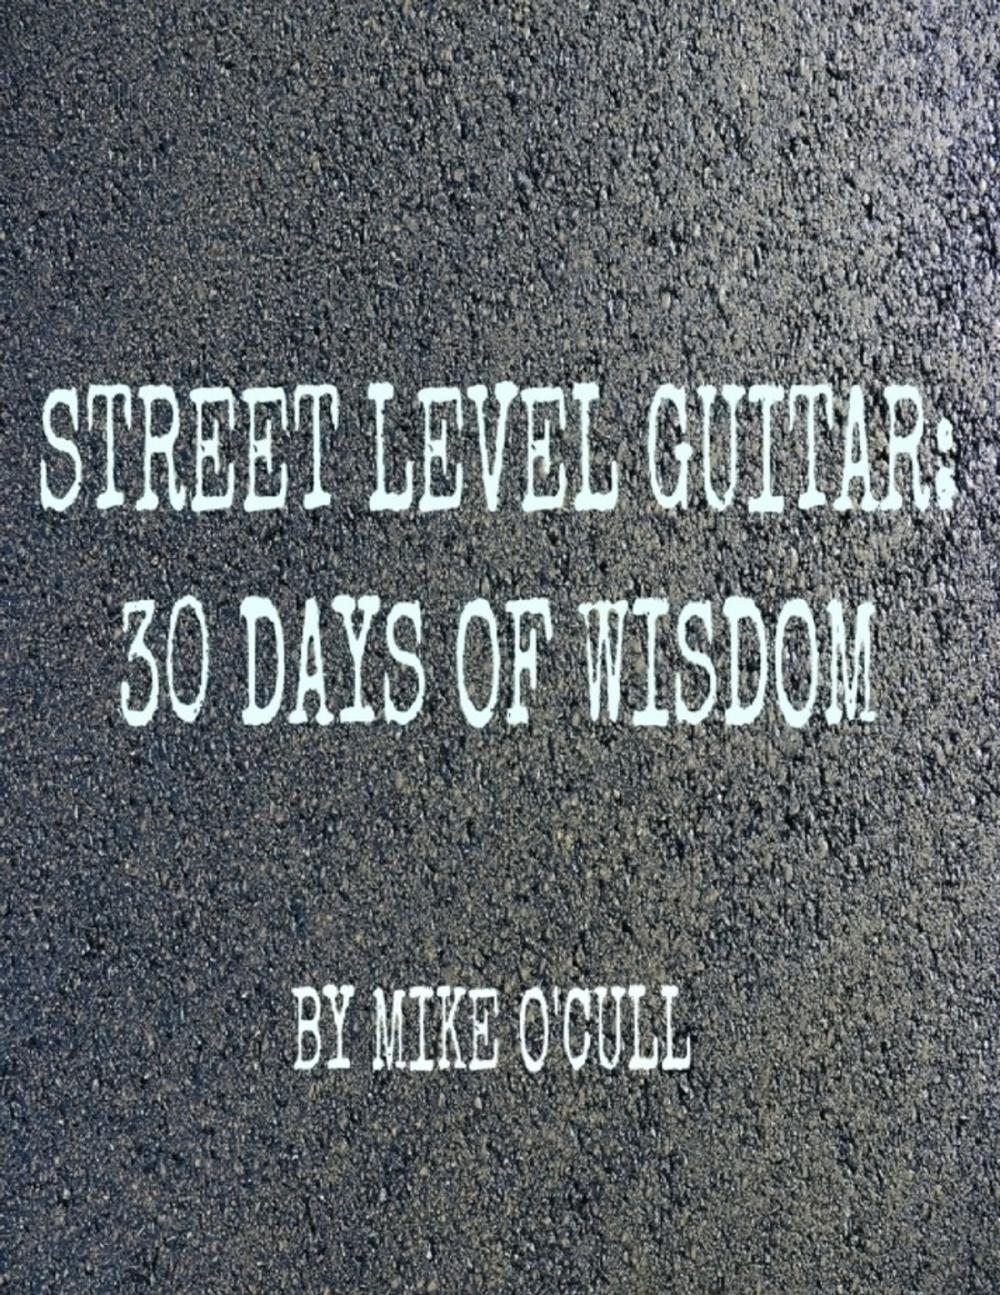 Big bigCover of Street Level Guitar: 30 Days of Wisdom